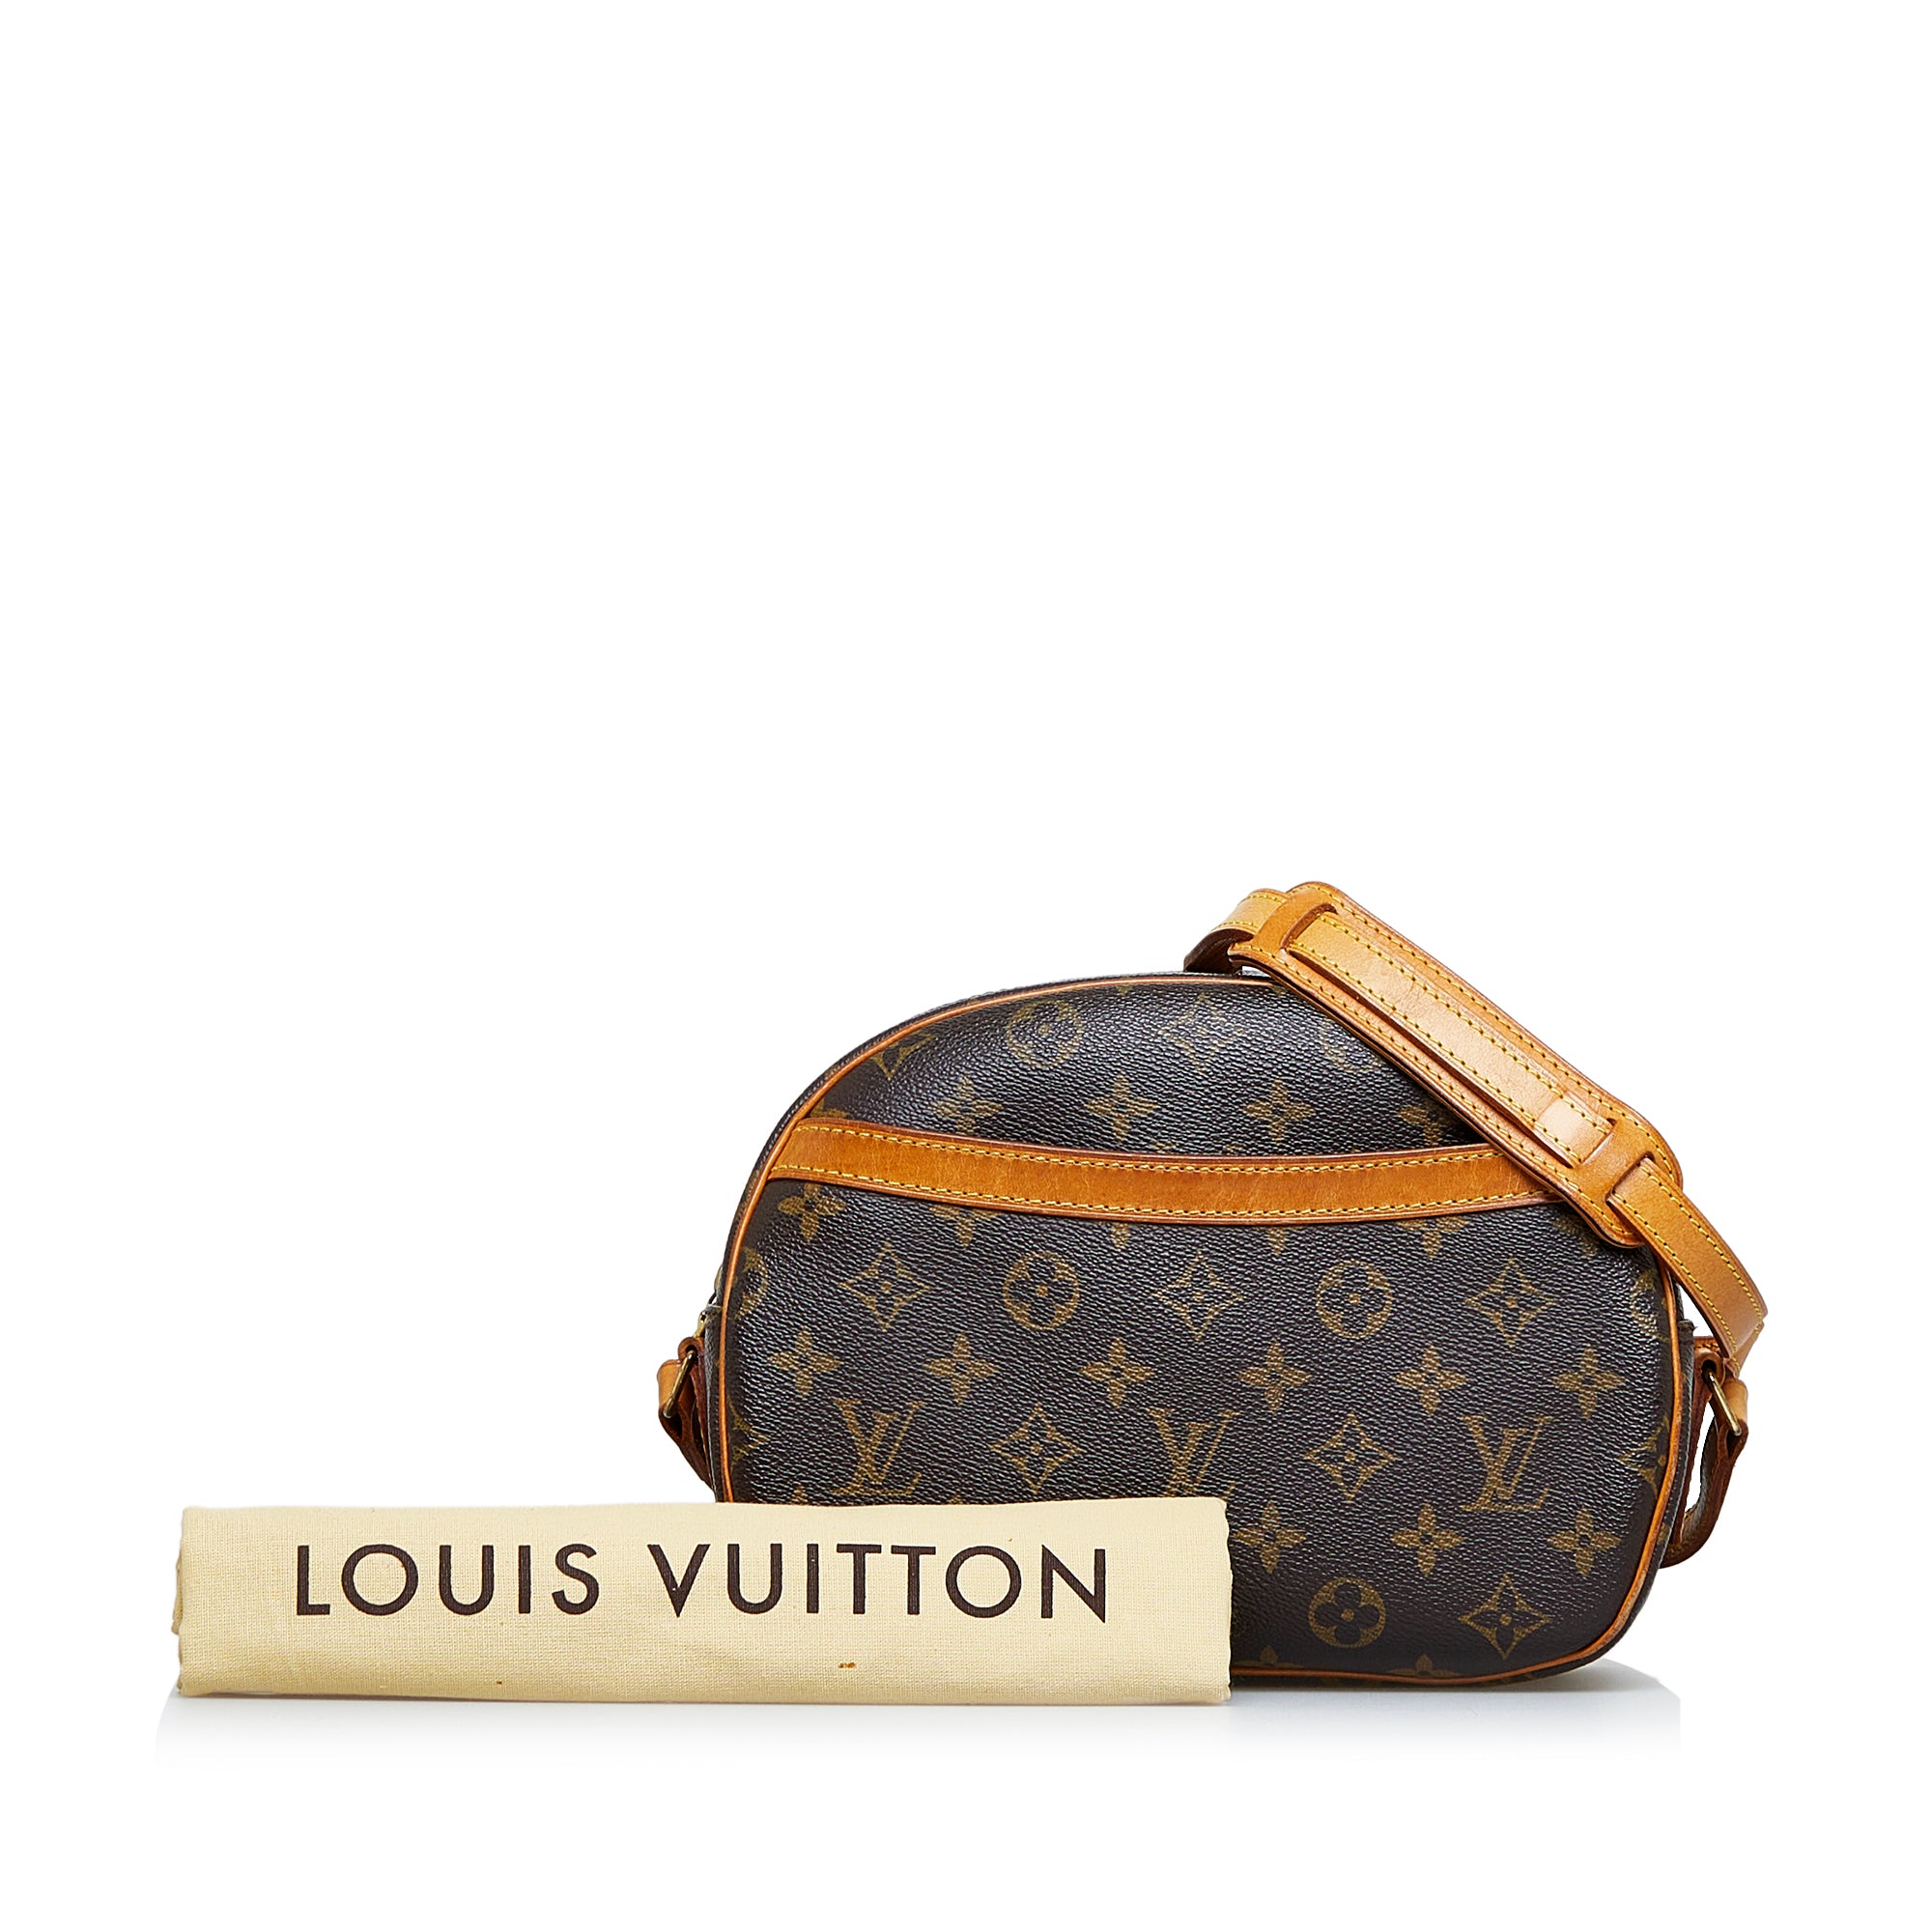 Louis Vuitton Blois Canvas Clutch Bag